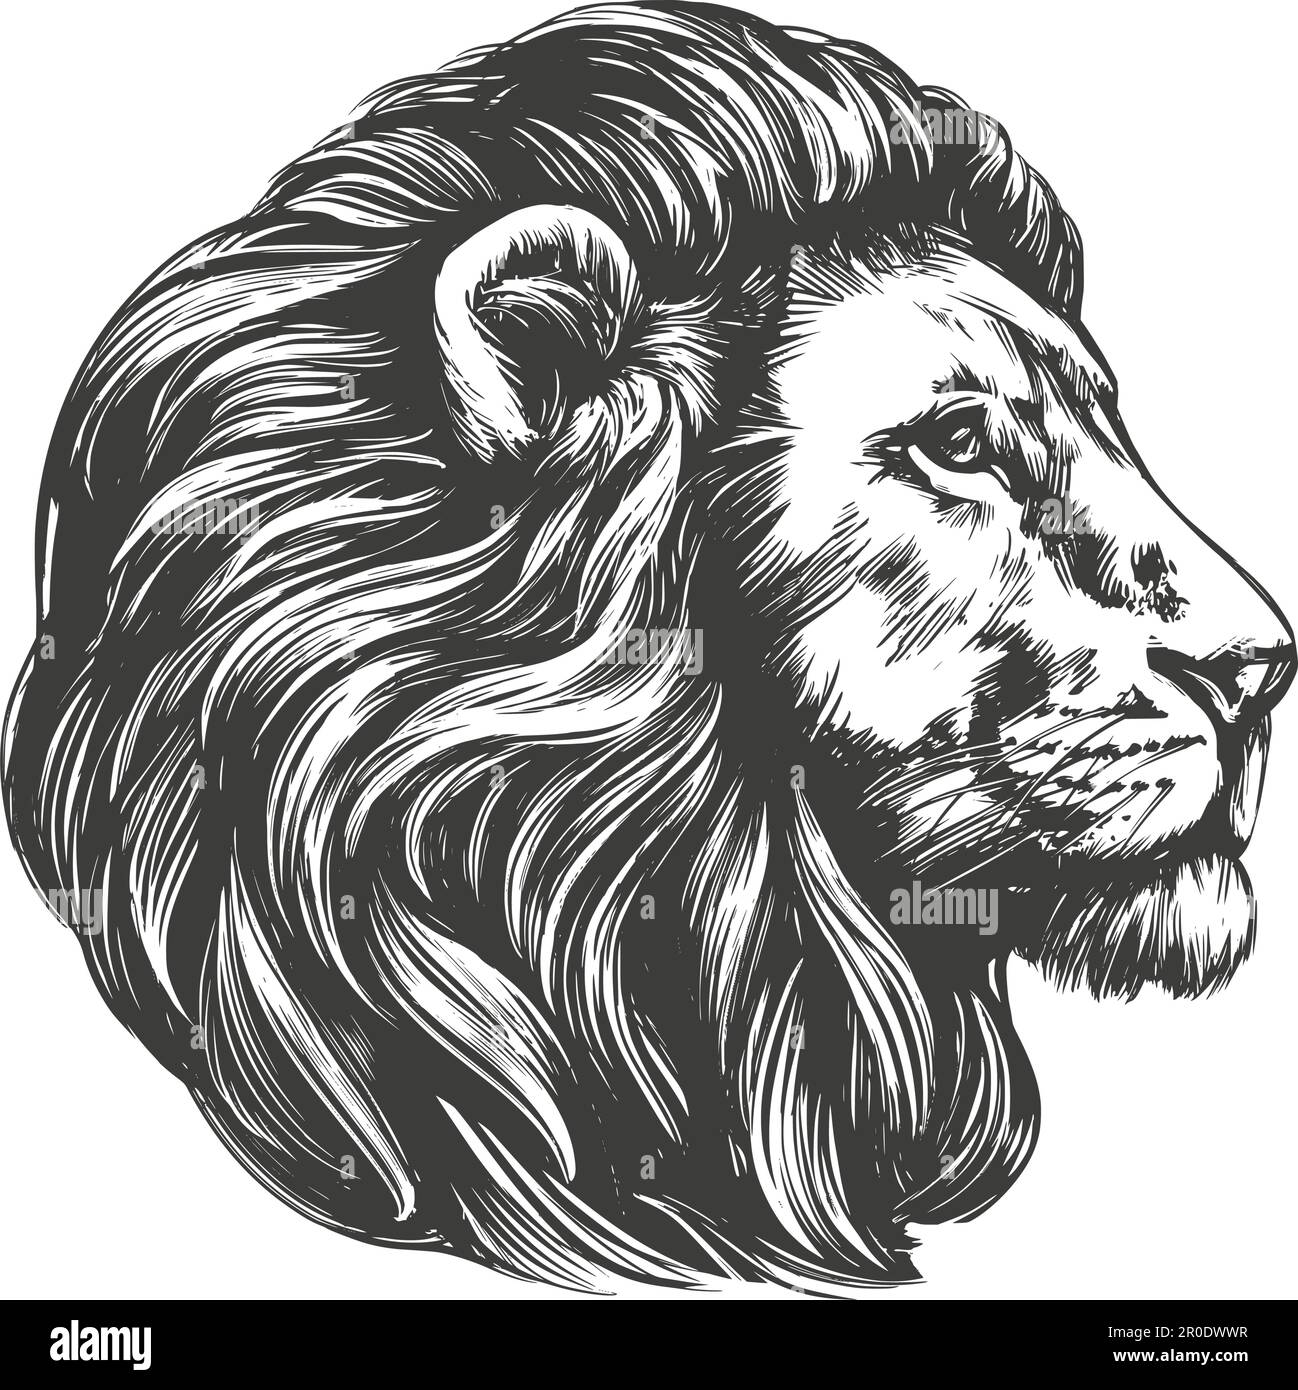 lion animal, roi des bêtes, dessin d'illustration vectorielle dessiné à la main. Illustration de Vecteur